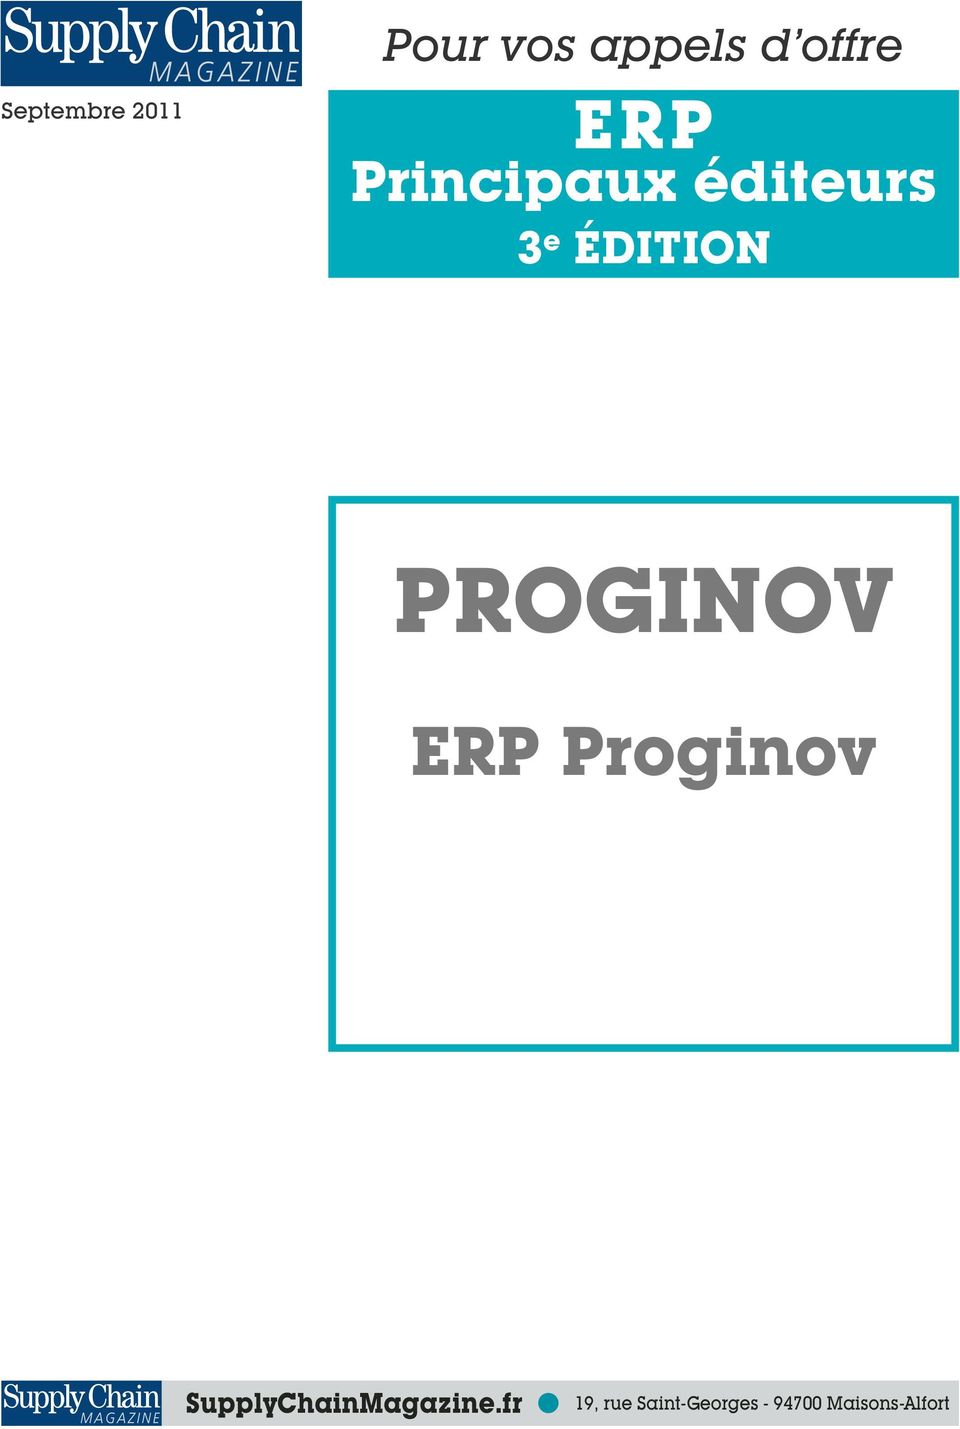 PROGINOV ERP Proginov